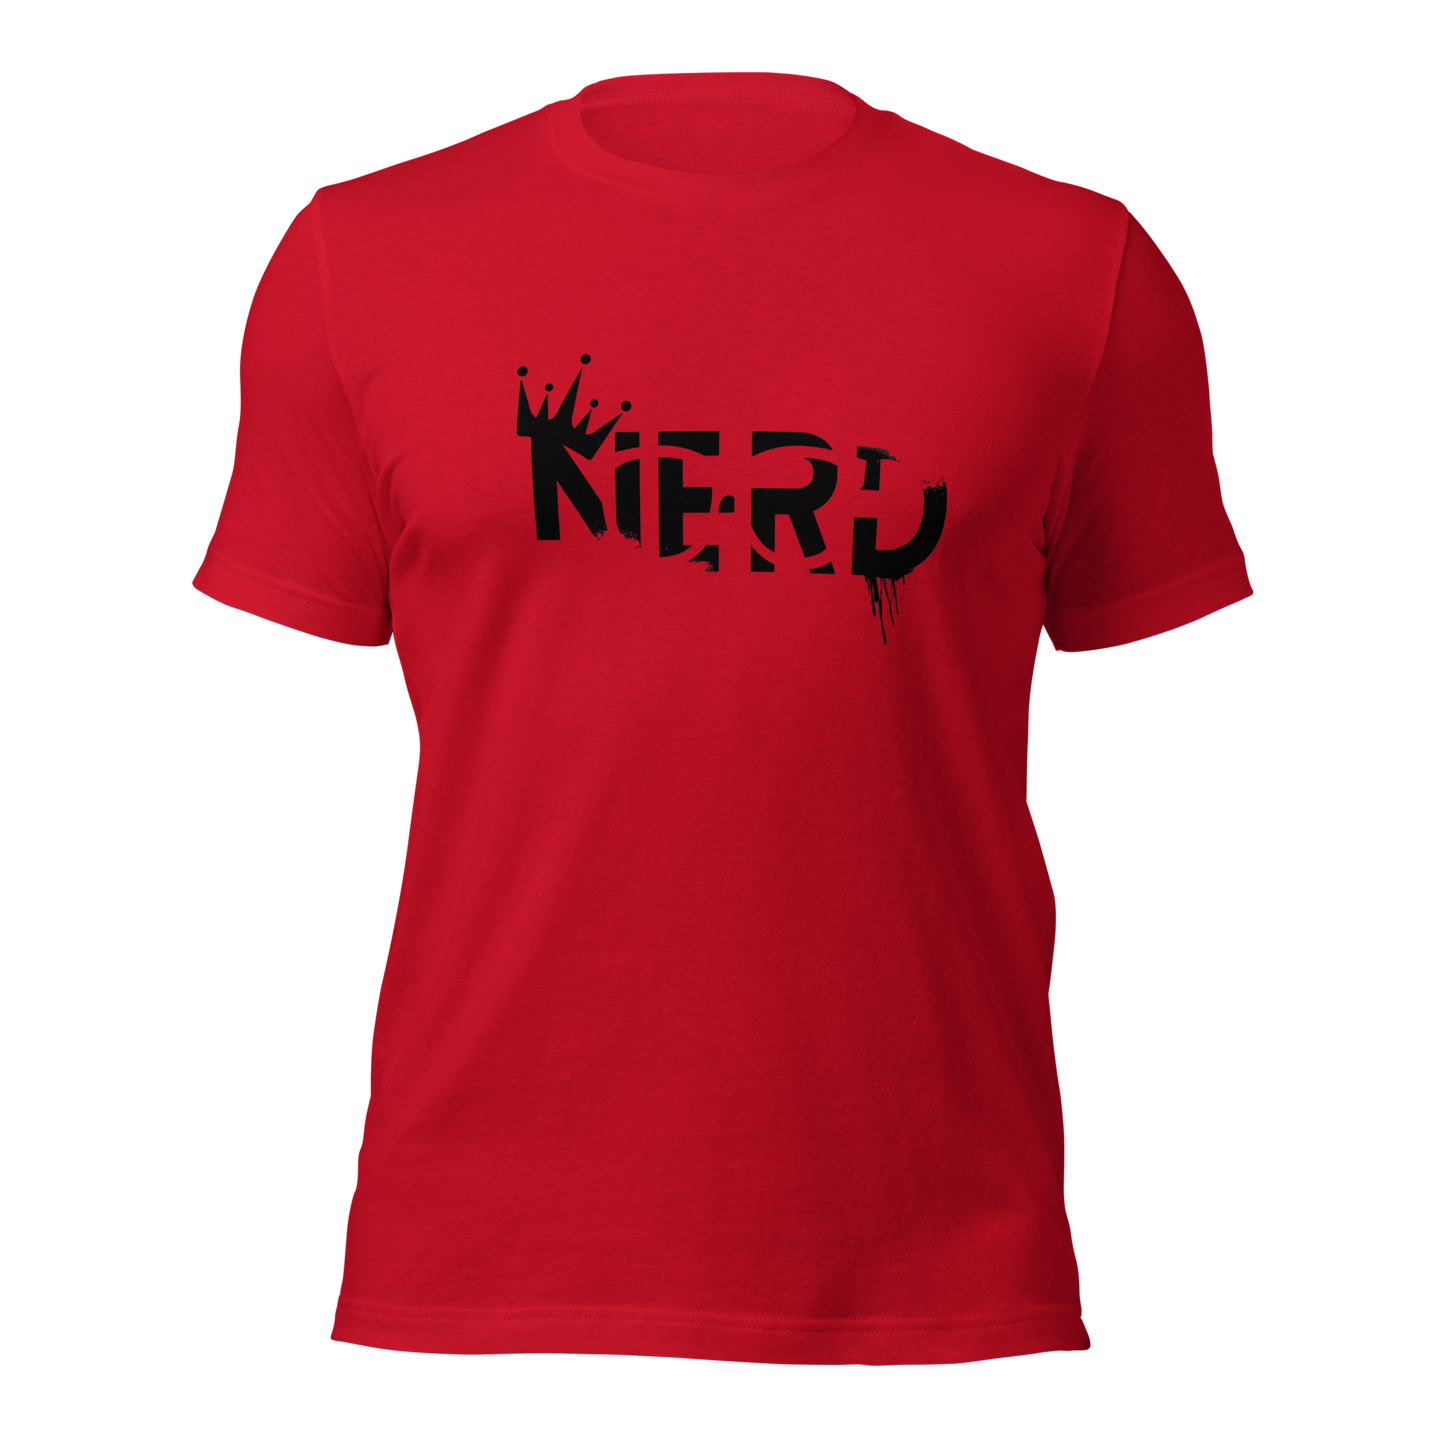 Nerd t-shirt